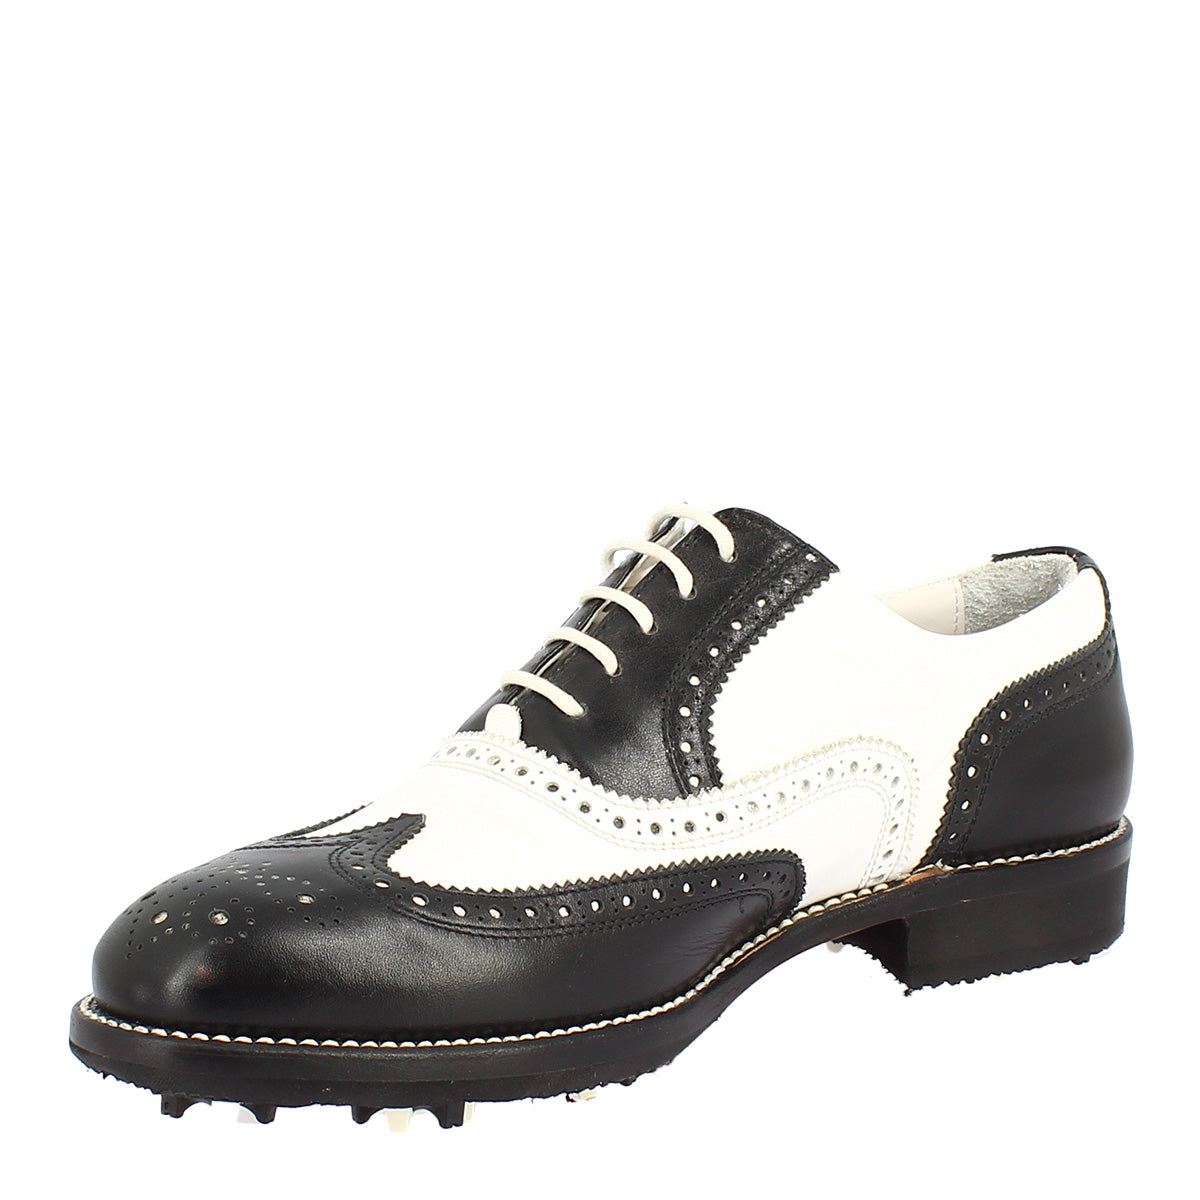 Zweifarbige schwarze und weiße handgefertigte Damen-Golfschuhe aus Leder